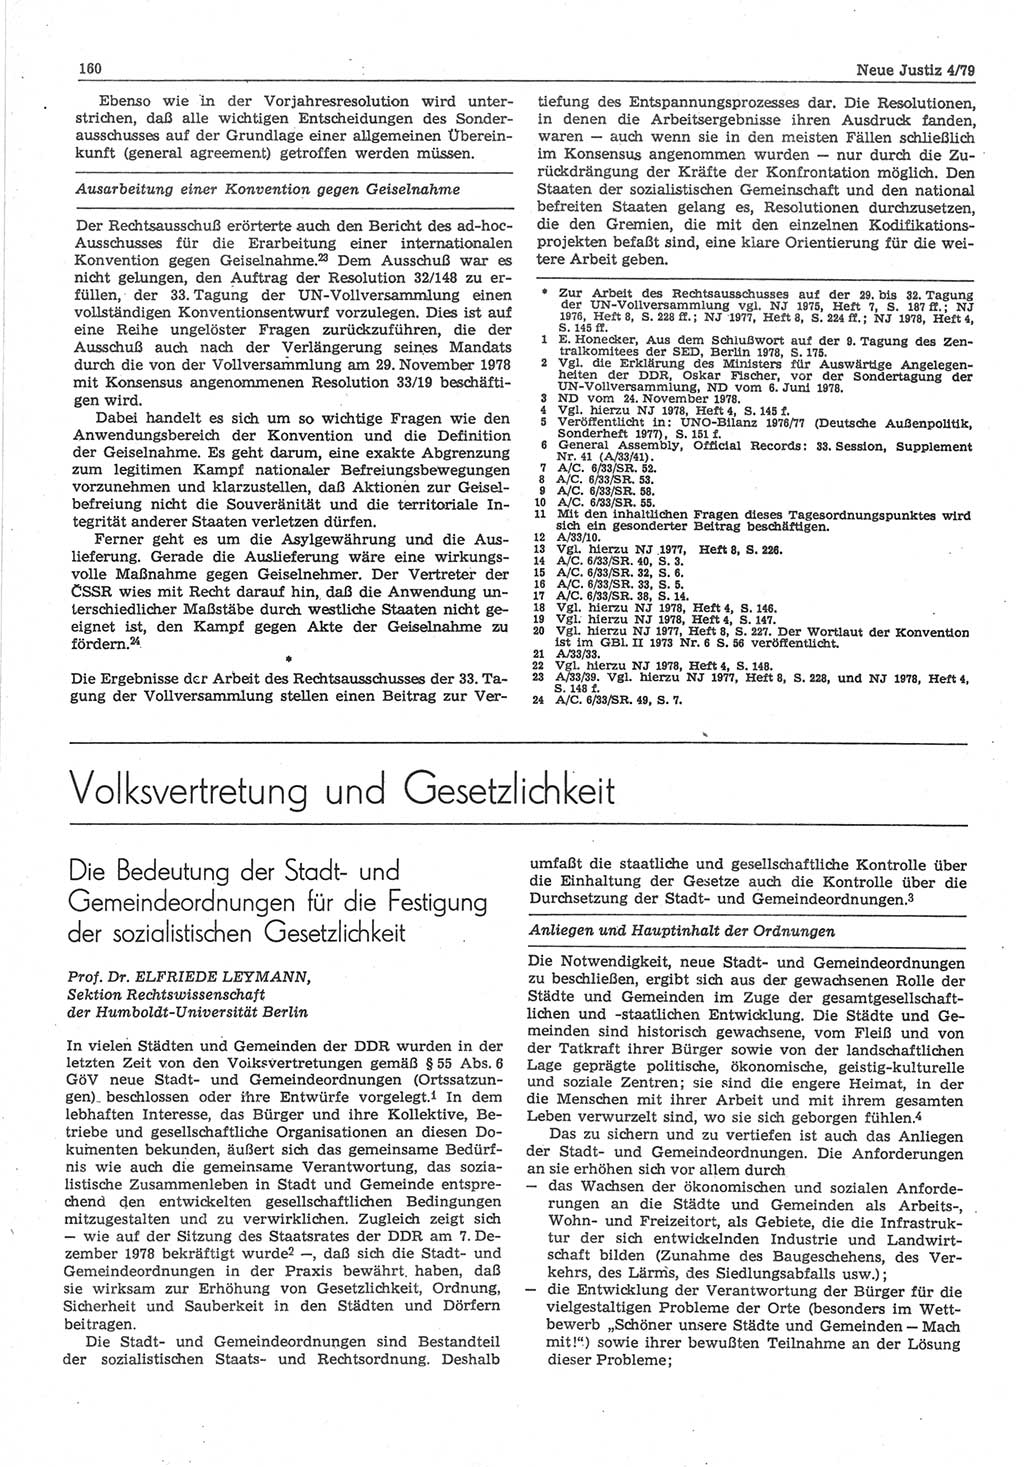 Neue Justiz (NJ), Zeitschrift für sozialistisches Recht und Gesetzlichkeit [Deutsche Demokratische Republik (DDR)], 33. Jahrgang 1979, Seite 160 (NJ DDR 1979, S. 160)